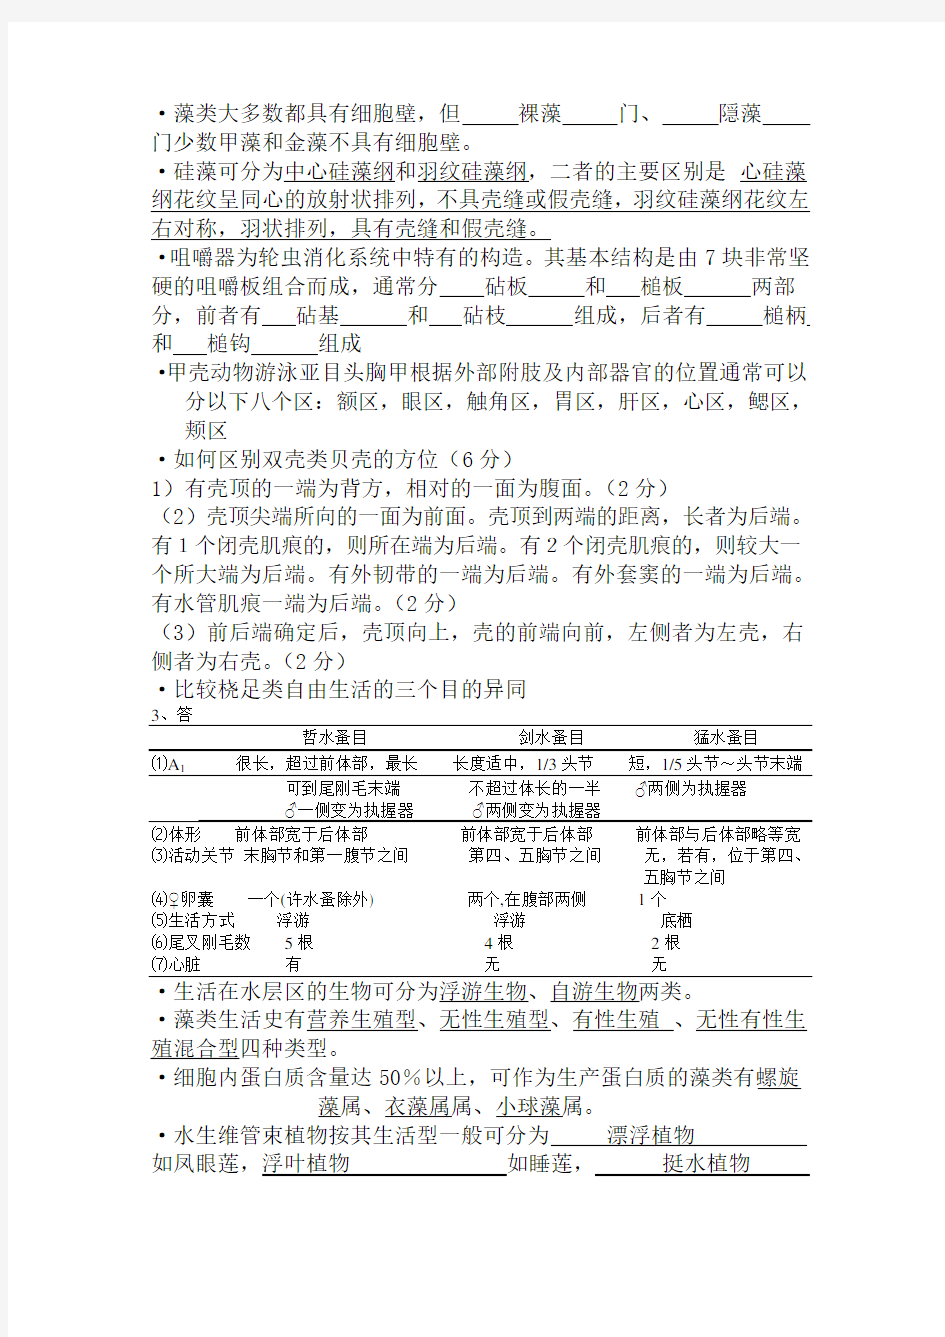 上海海洋大学水生生物学试题库完整版(含整理答案)